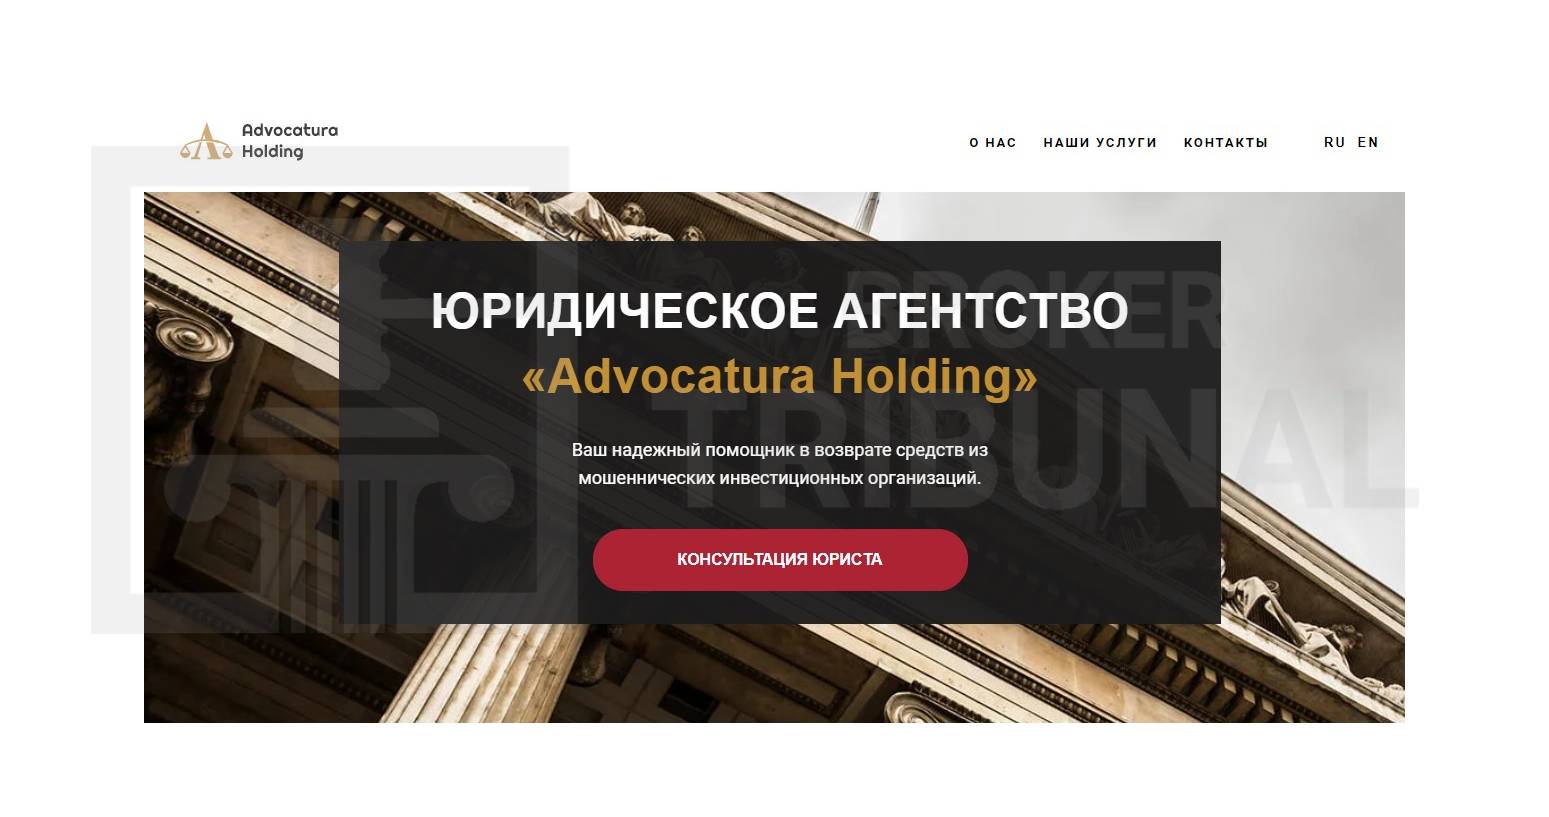 AdvocaturaHolding